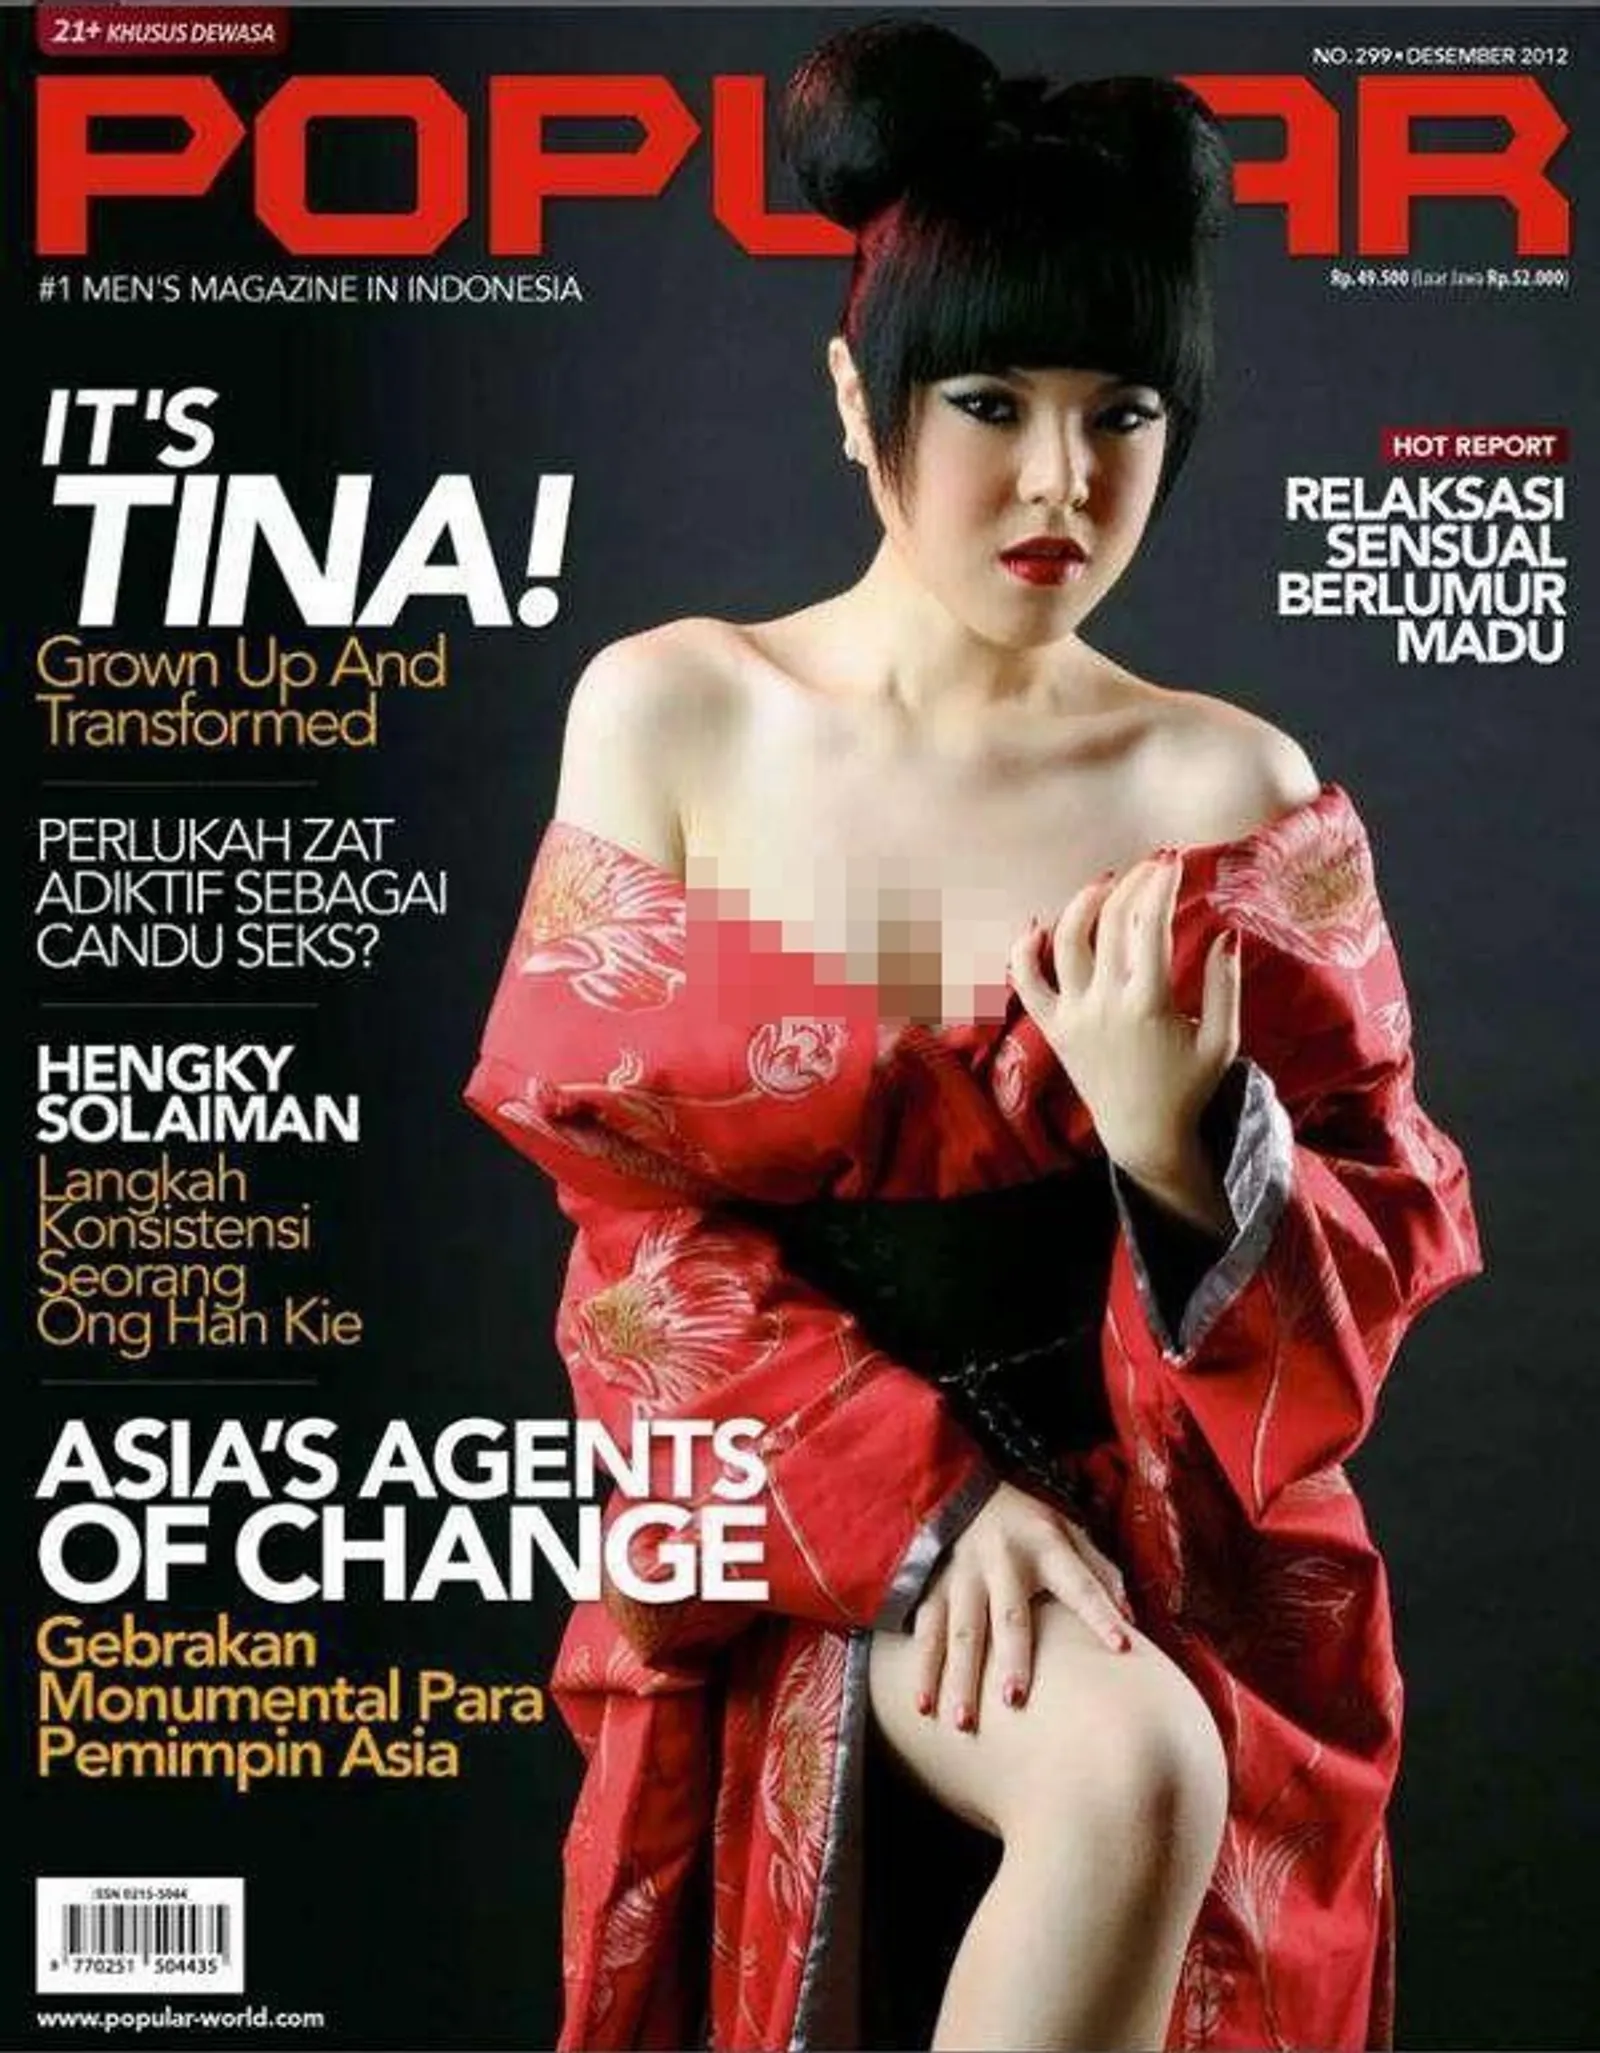 Para Artis Indonesia yang Berani Pose Seksi untuk Cover Majalah